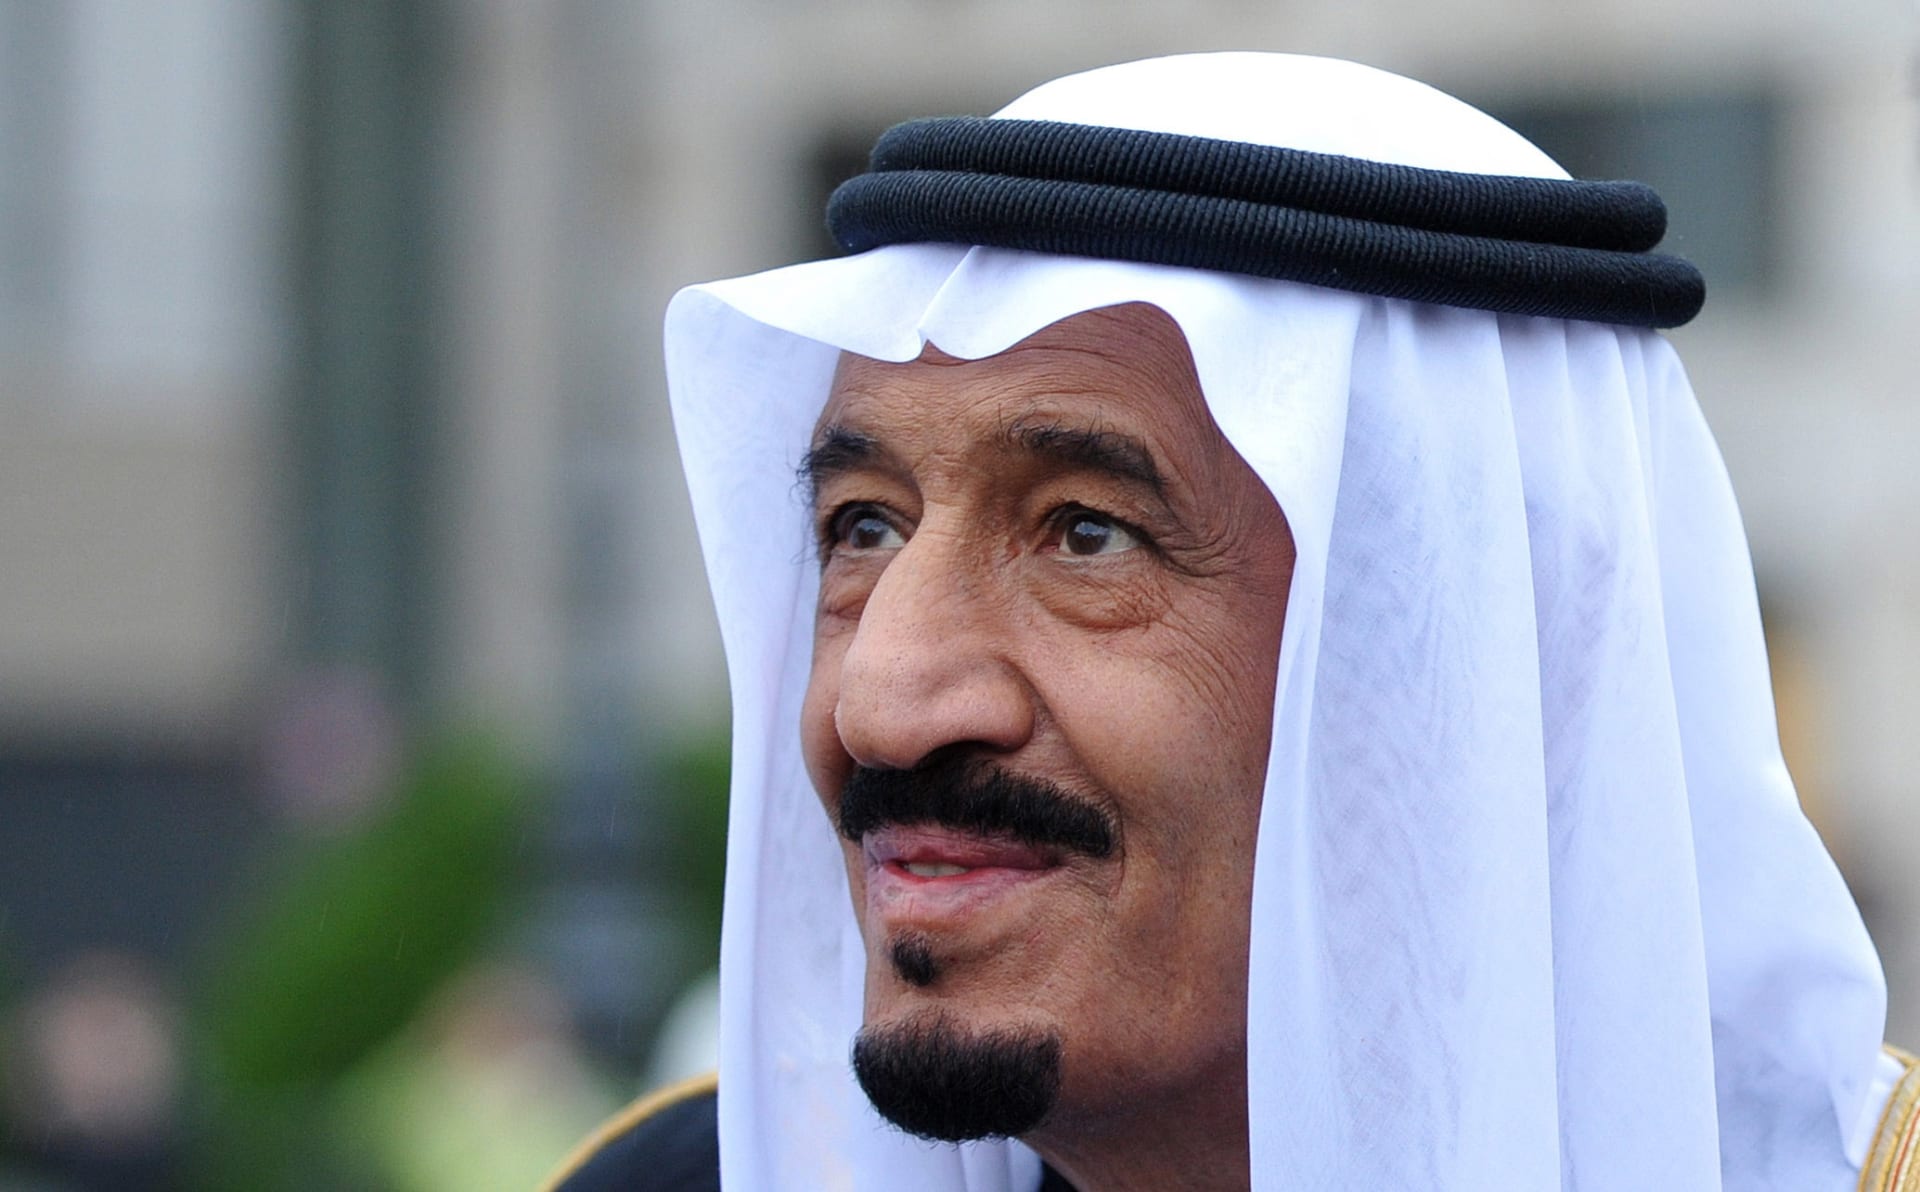 السعودية.. الديوان الملكي: دخول الملك سلمان إلى المستشفى لإجراء فحوصات طبية